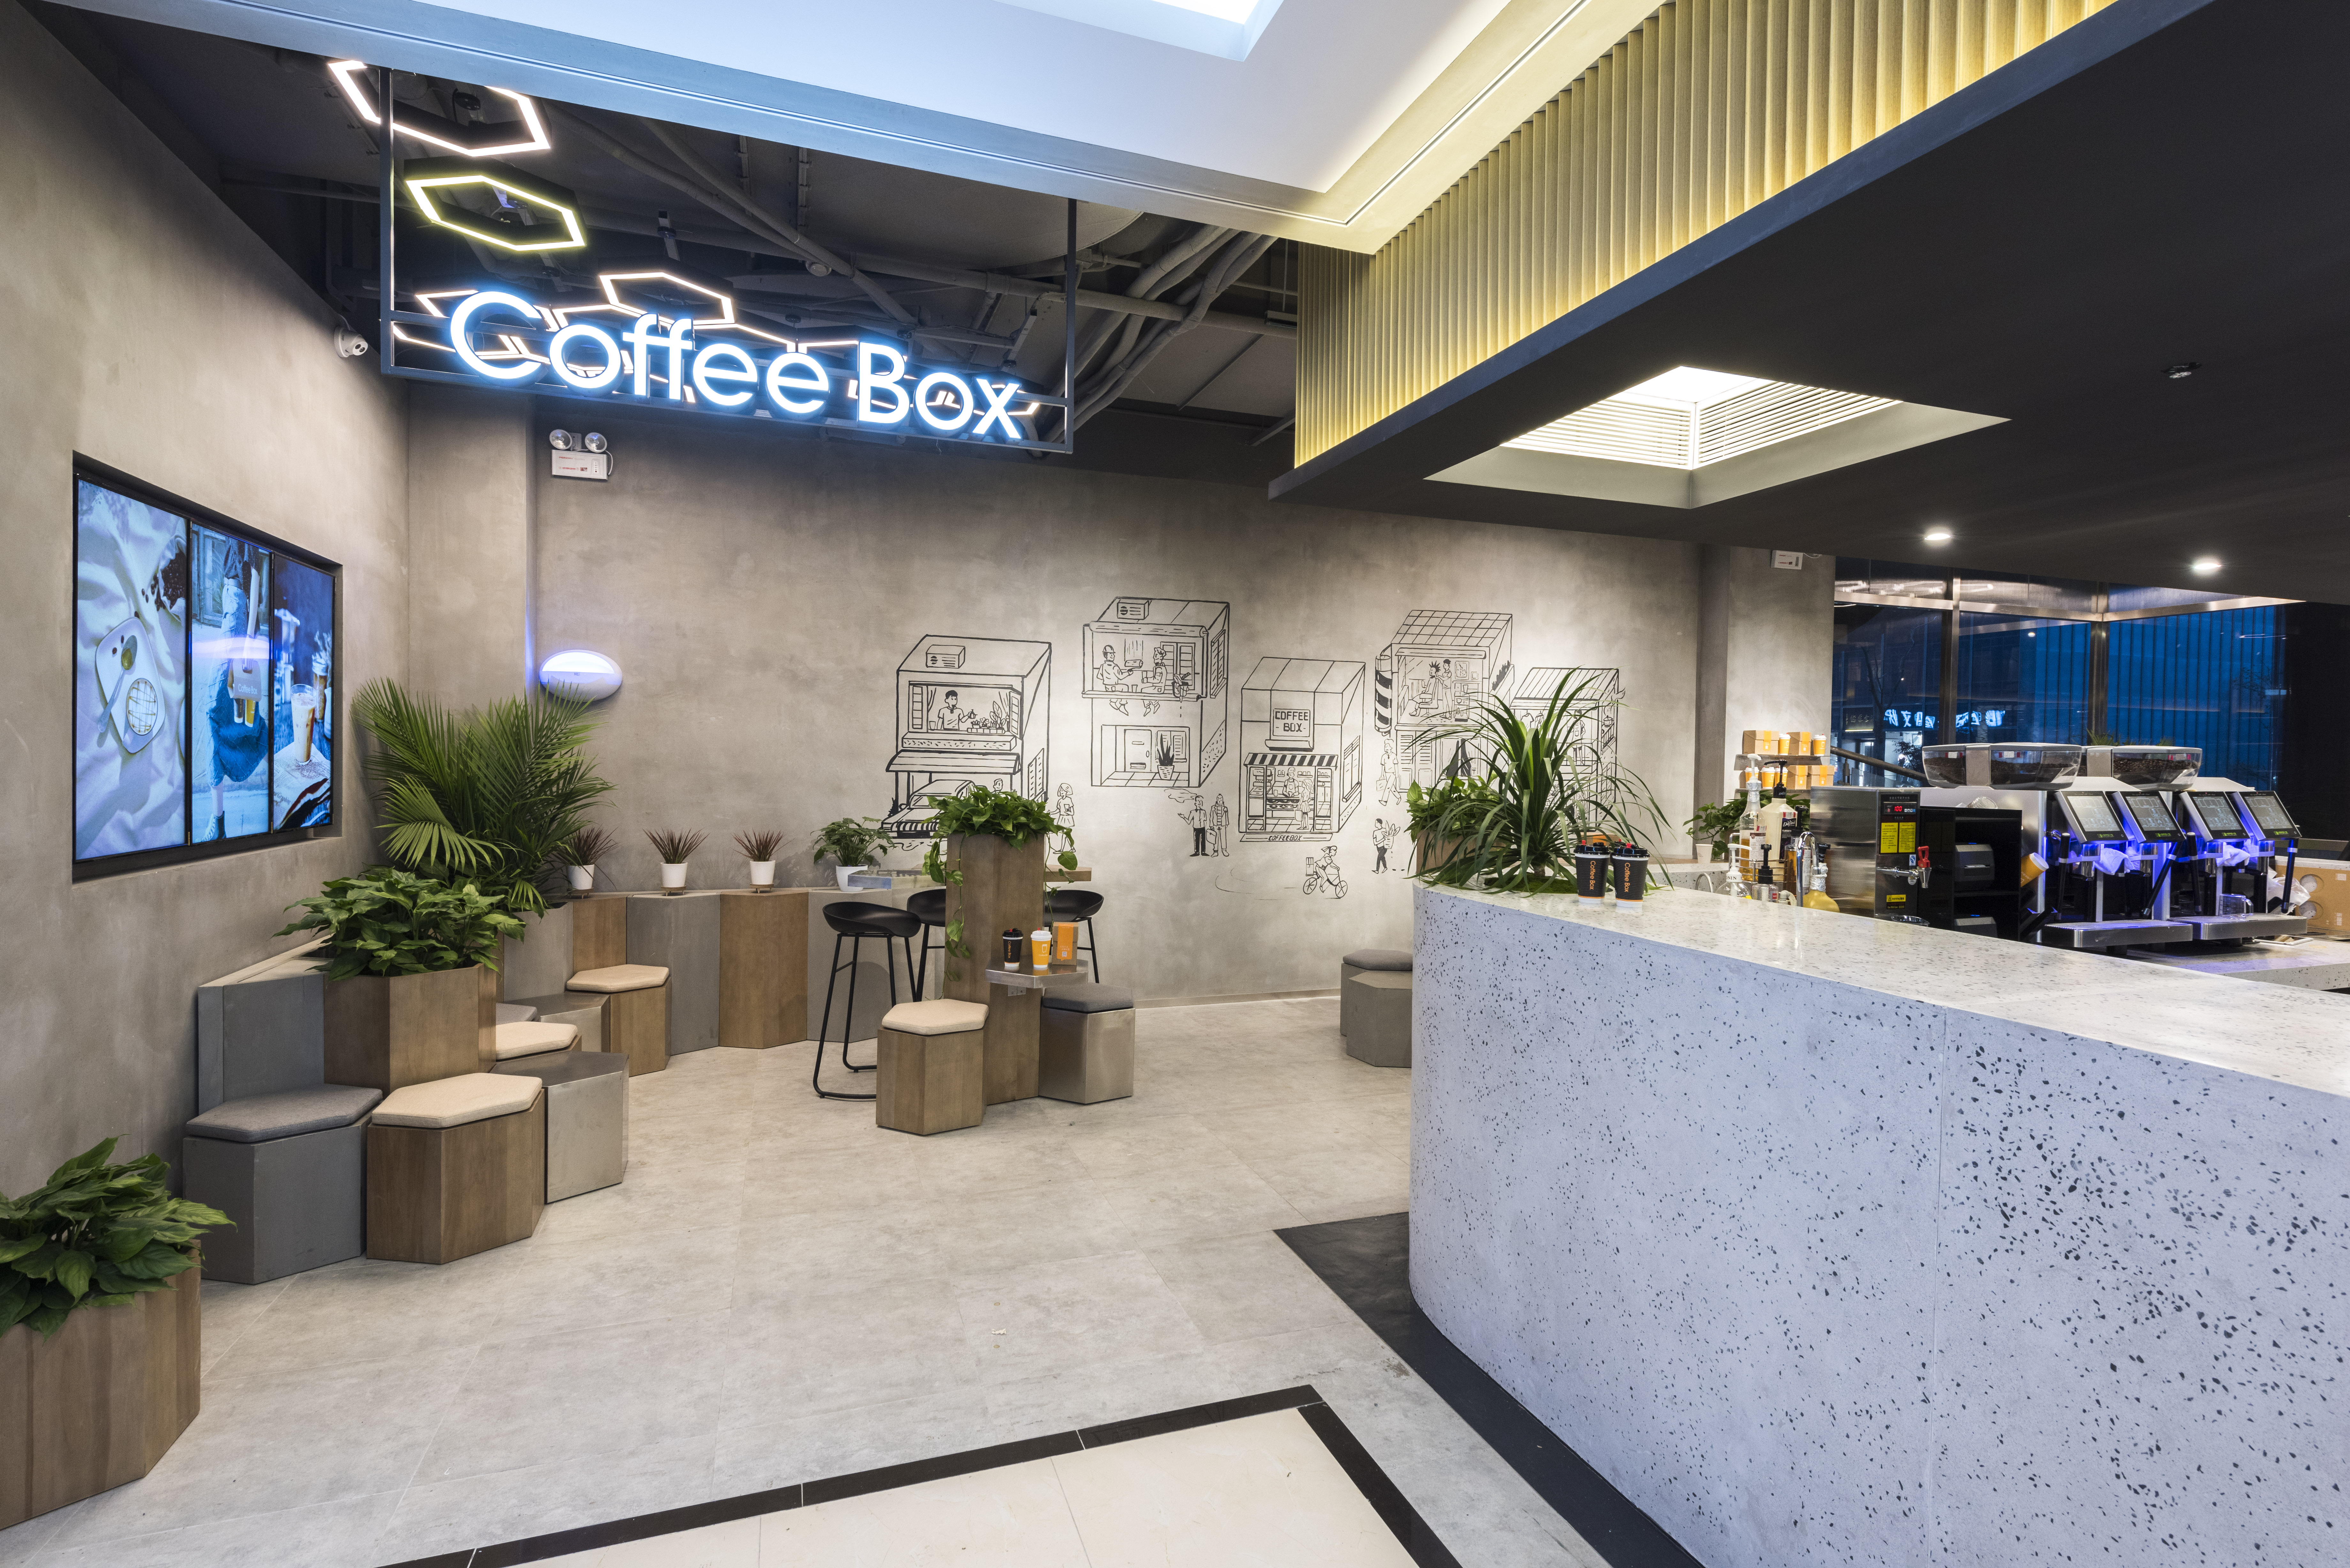 36氪独家丨连咖啡将开设超50家大型咖啡馆，加速新零售布局